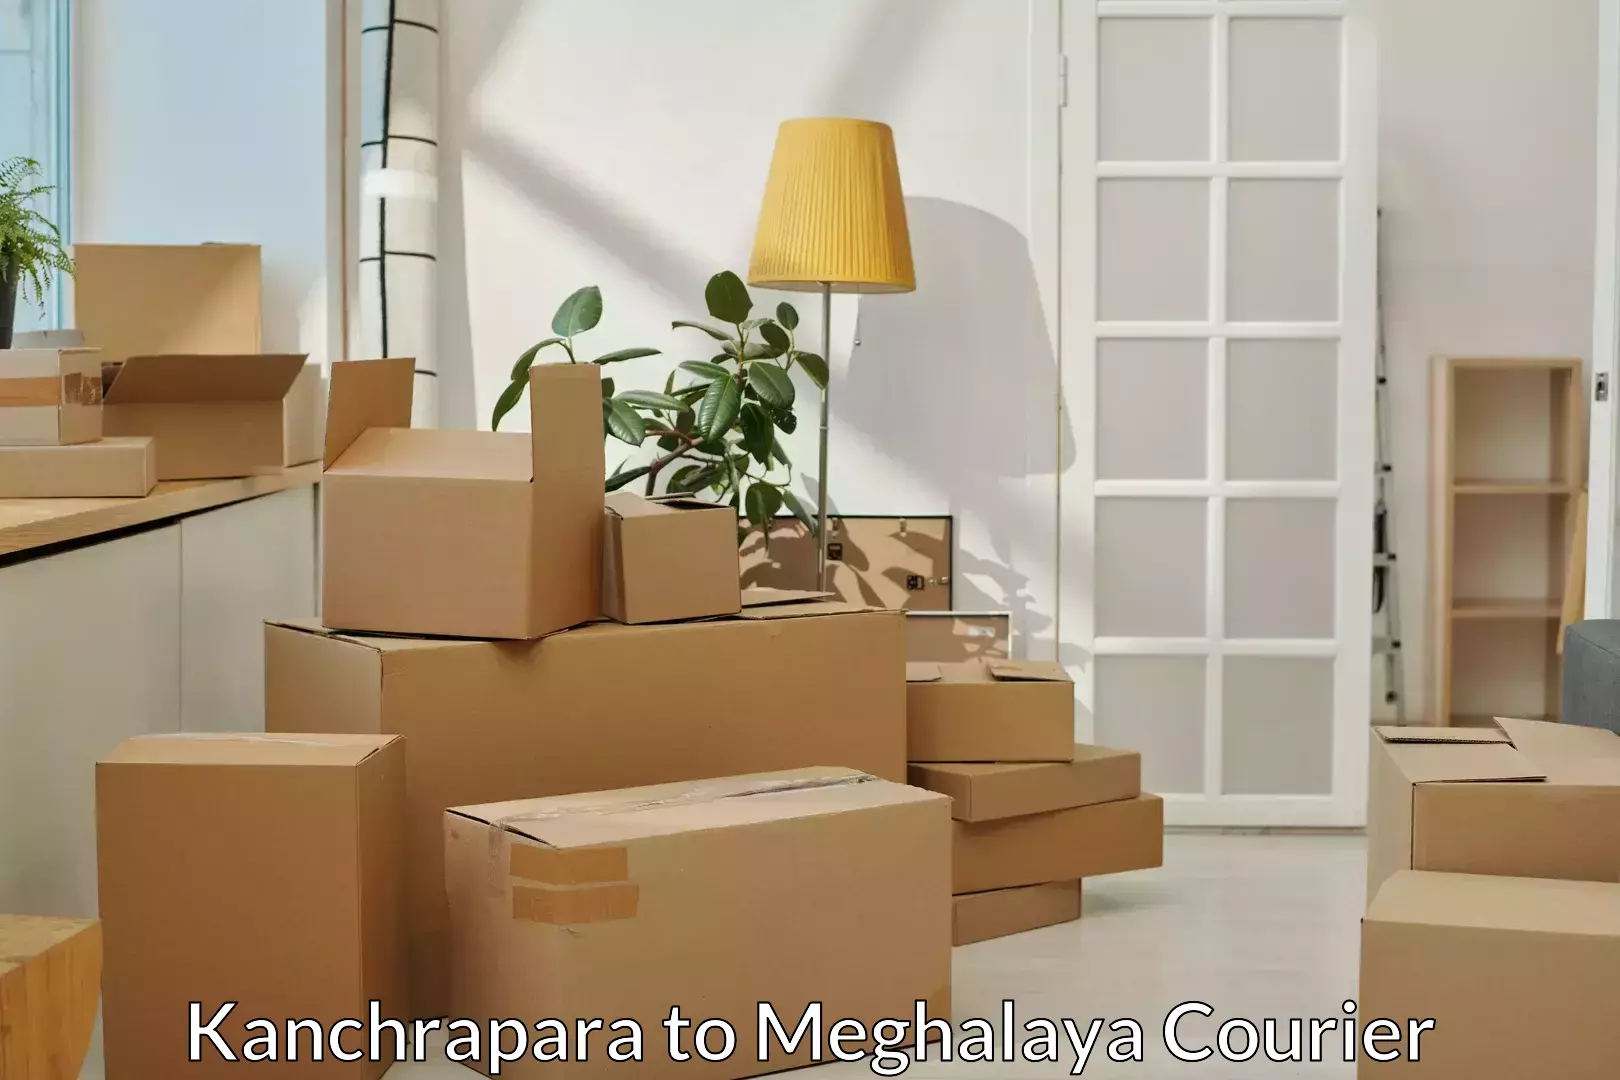 Efficient moving services Kanchrapara to Meghalaya